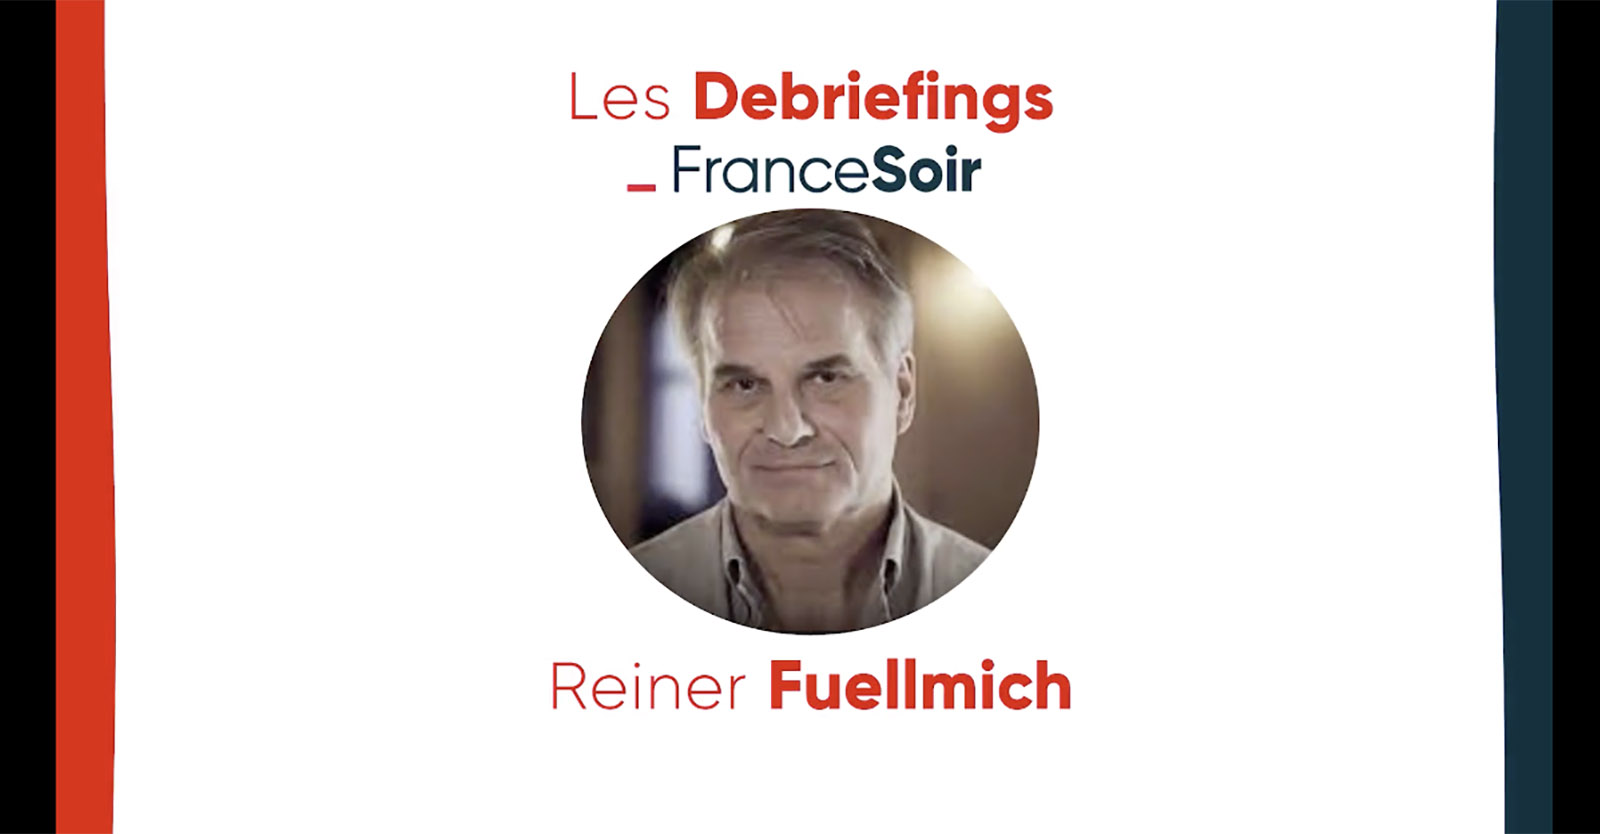 Reiner Fuellmich: “Il nostro lavoro sta andando bene, ma attenzione alle false voci”